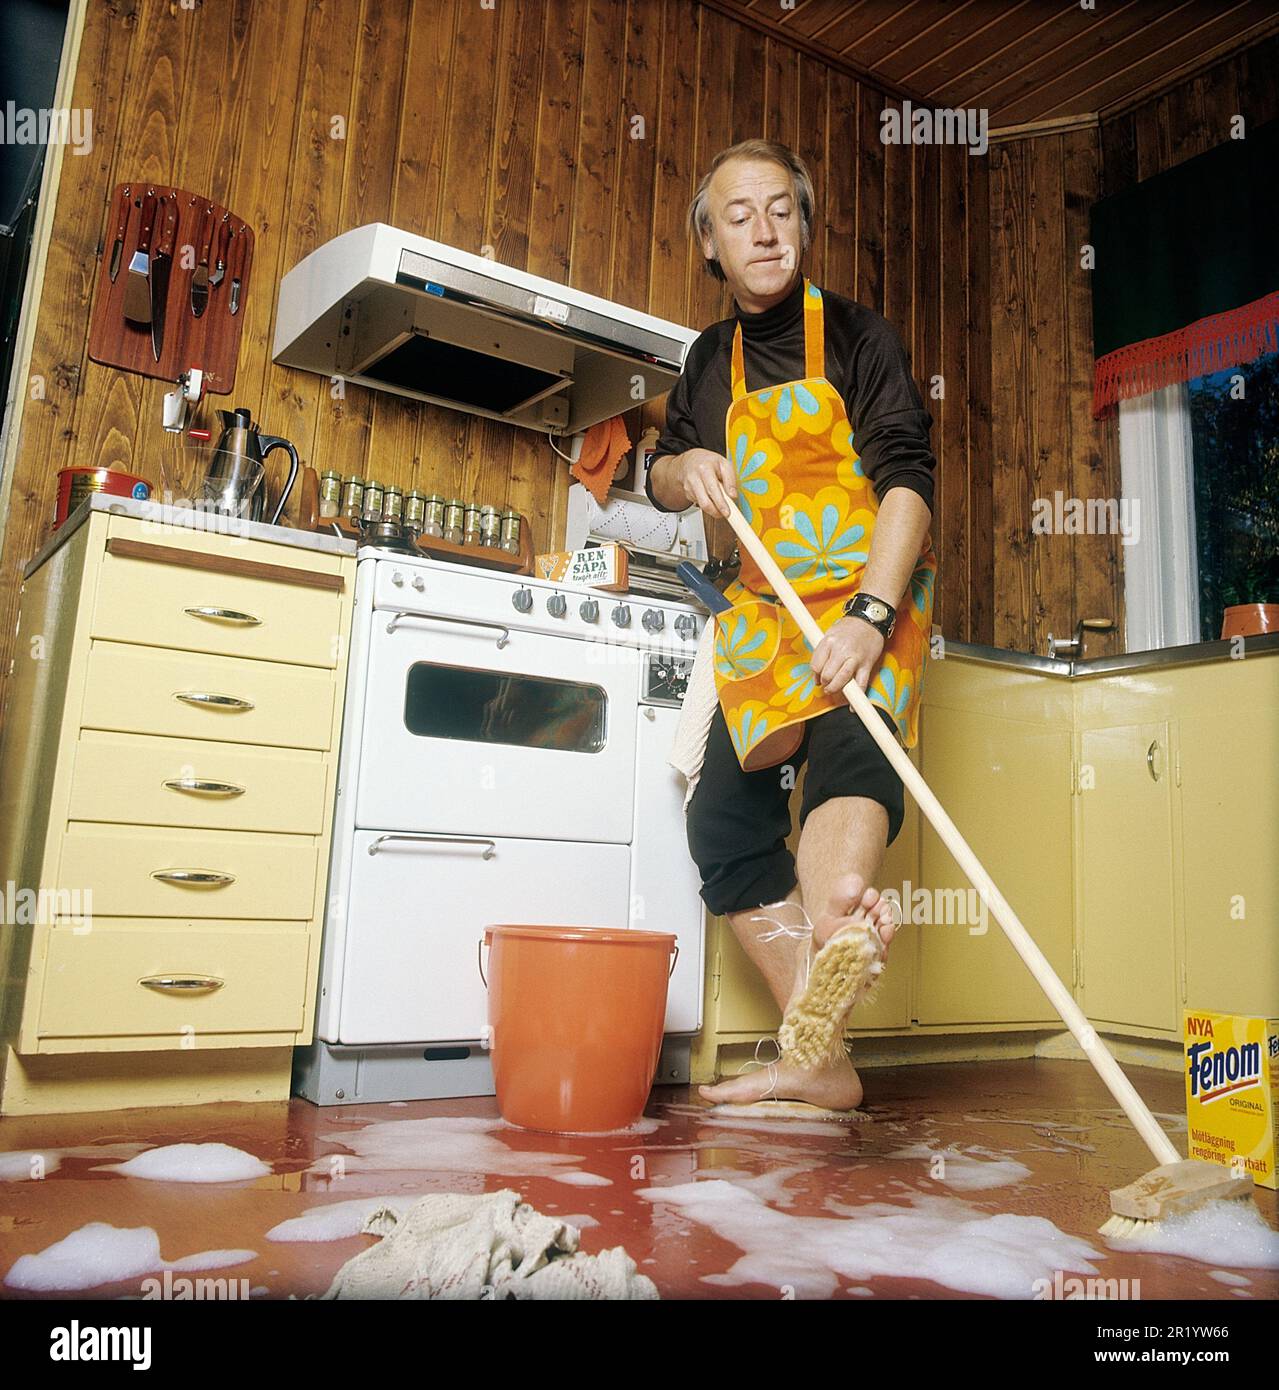 Jour de nettoyage en 1970s. Intérieur d'une cuisine où l'on voit un homme nettoyer le sol. Pour accélérer le travail, il a monté des brosses sur ses pieds. Il est acteur Stig Grybe 1928-2017. 4 octobre 1972. Kristoffersson Banque D'Images